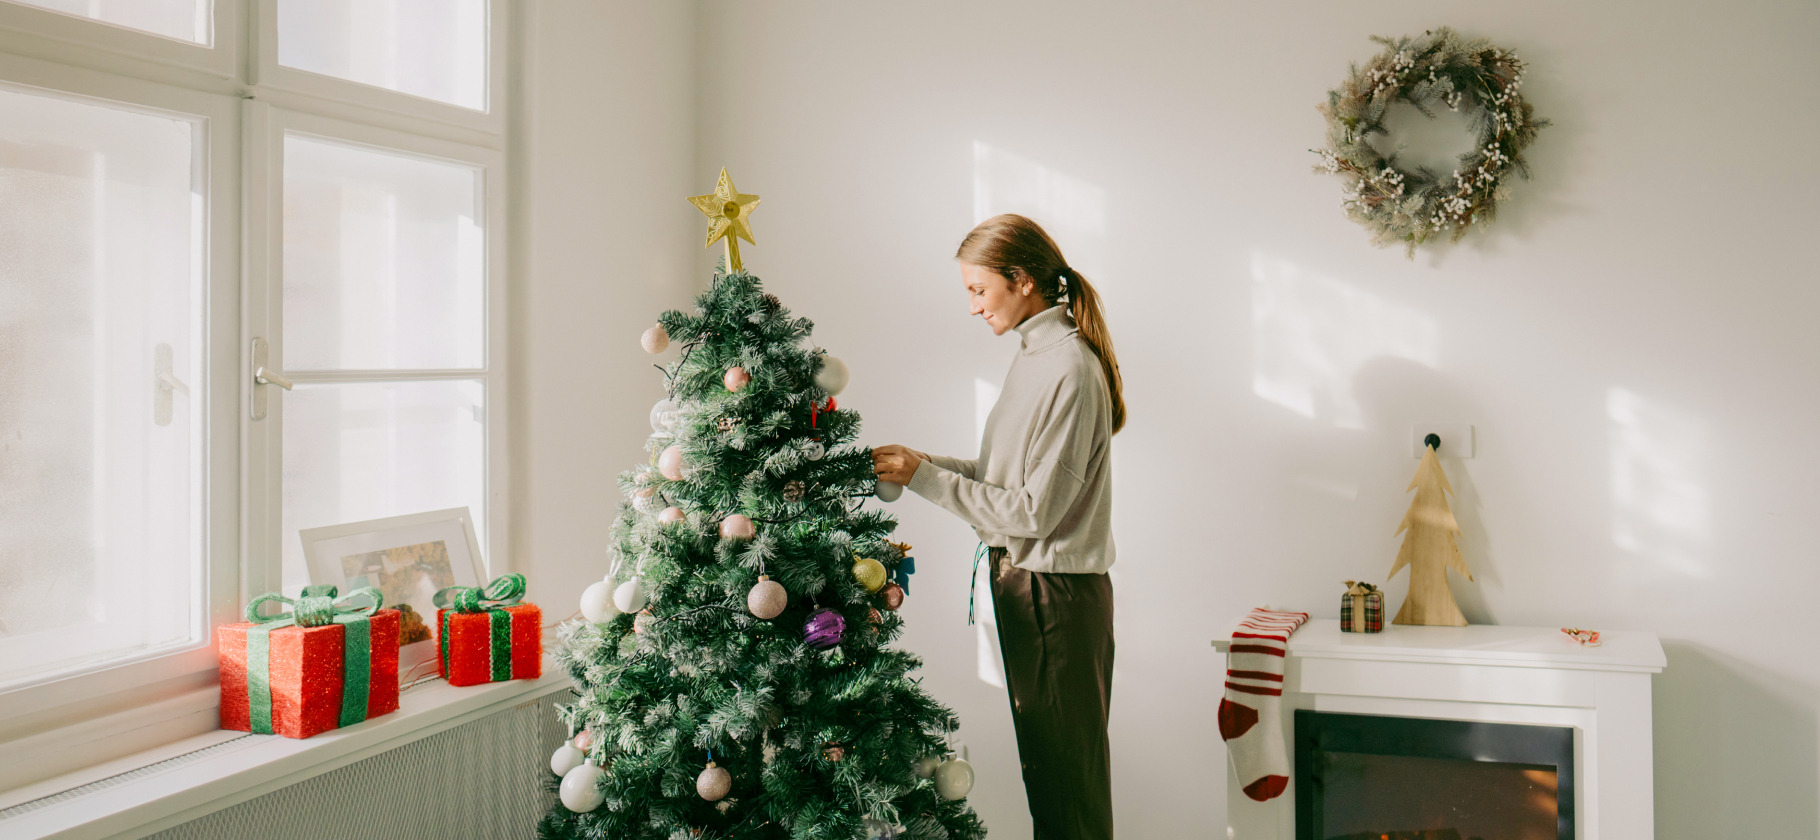 «Предвкушение даже лучше самого праздника»: когда и зачем украшать дом к Новому году